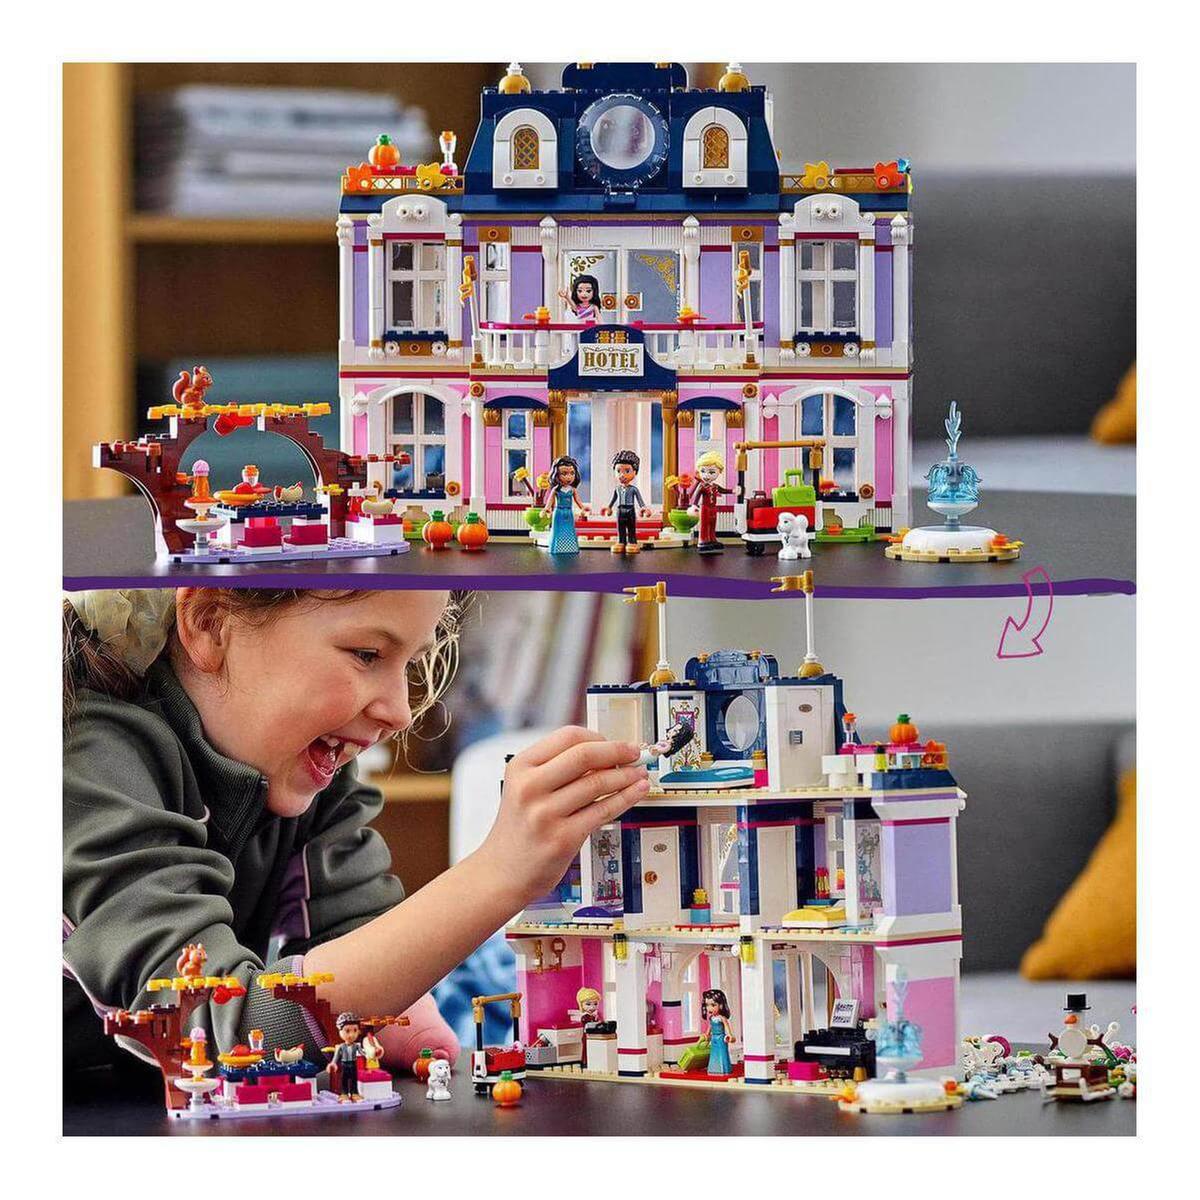 LEGO Friends - O grande hotel de Heartlake City - 41684 | LEGO FRIENDS |  Loja de brinquedos e videojogos Online Toysrus